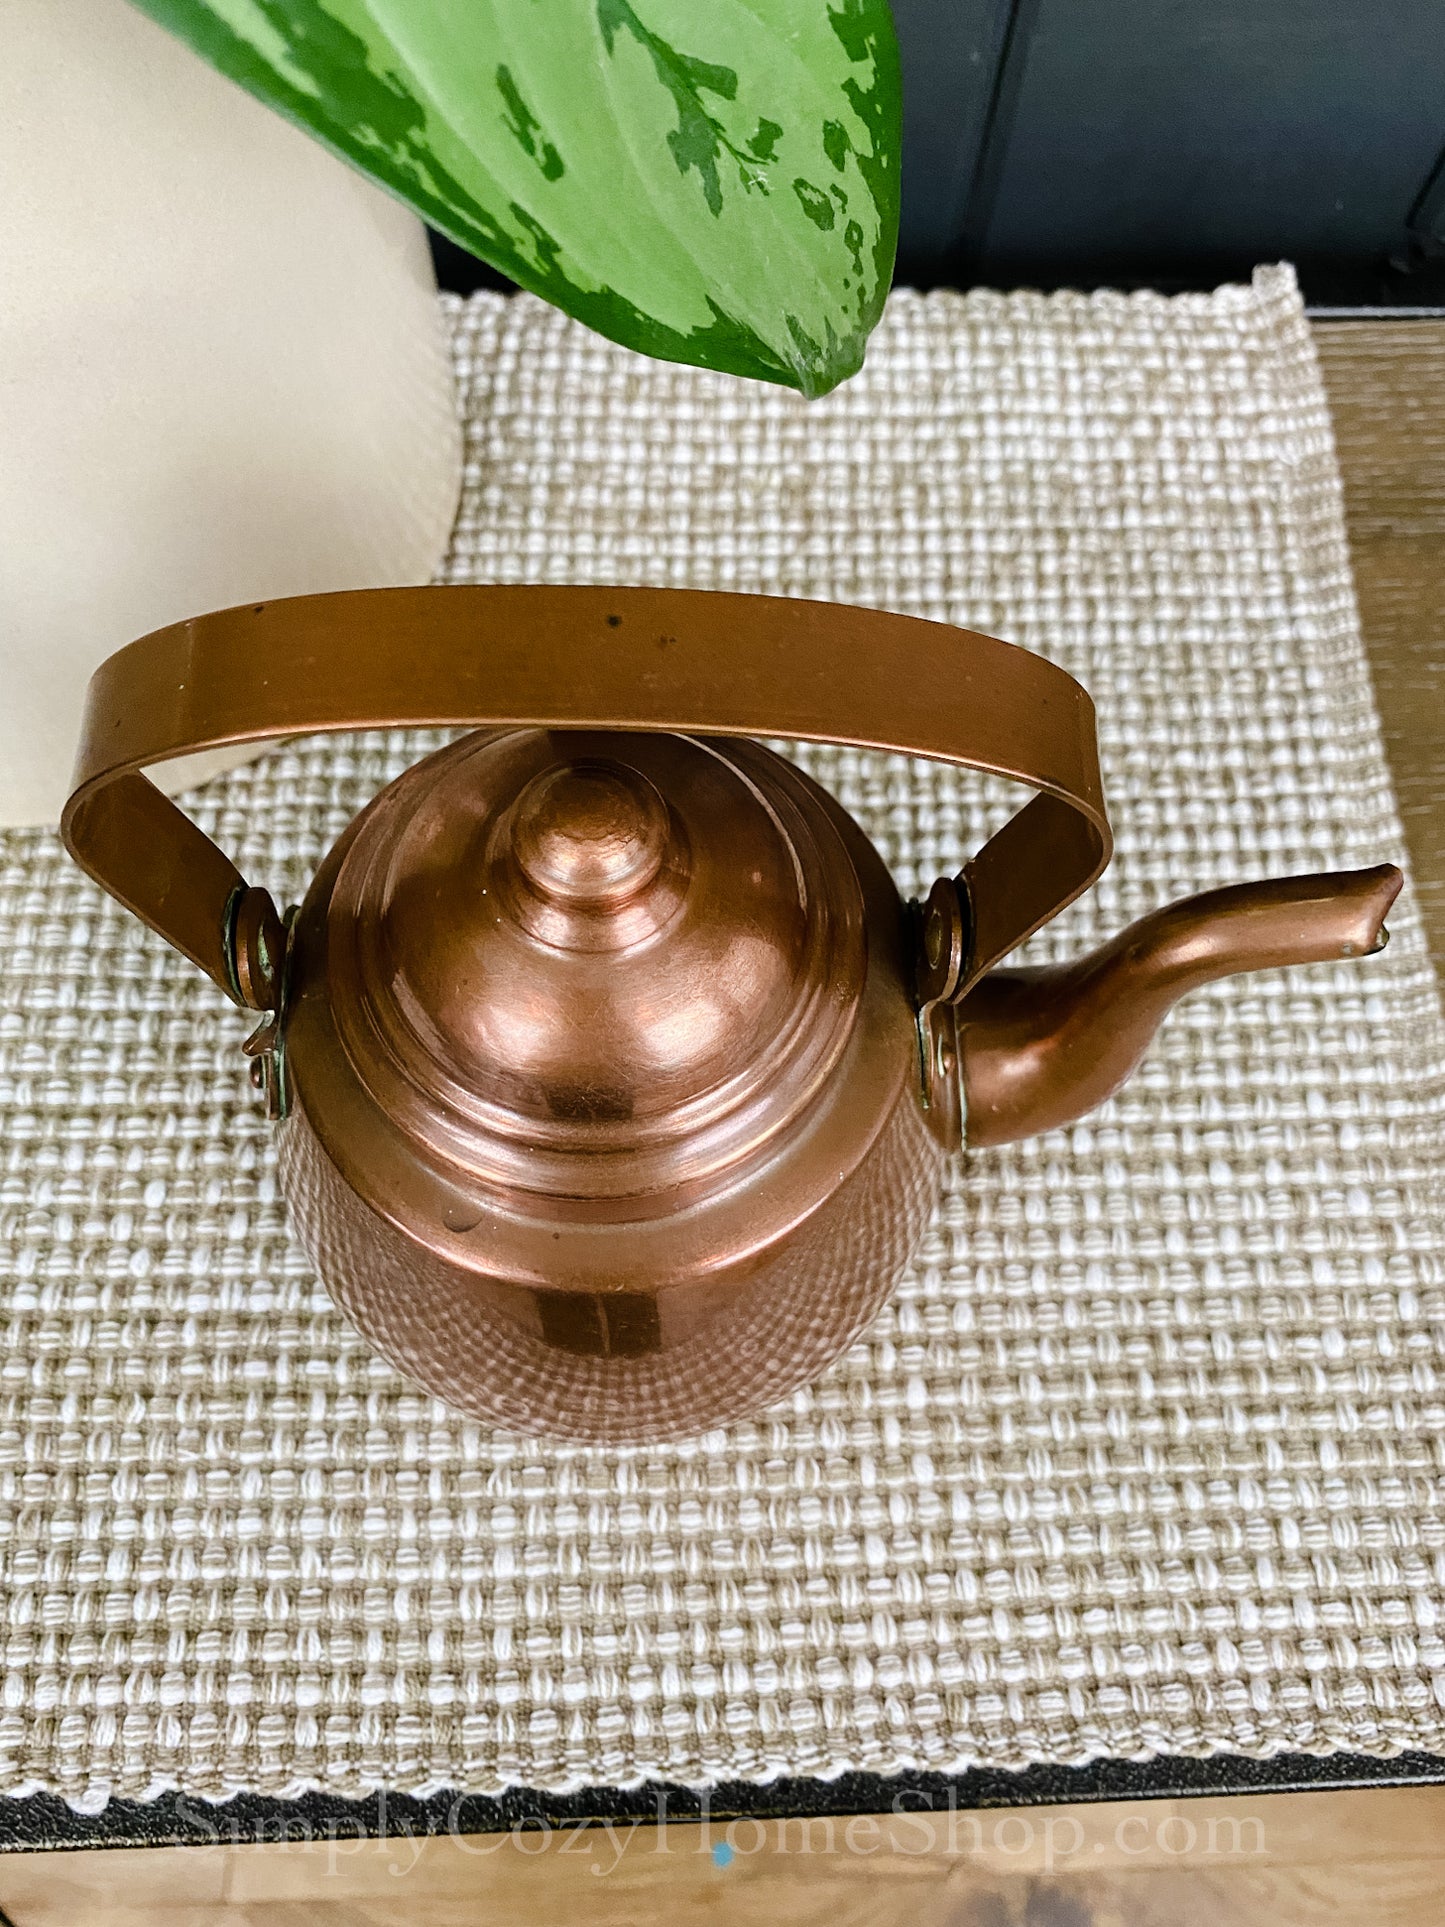 Small copper teapot